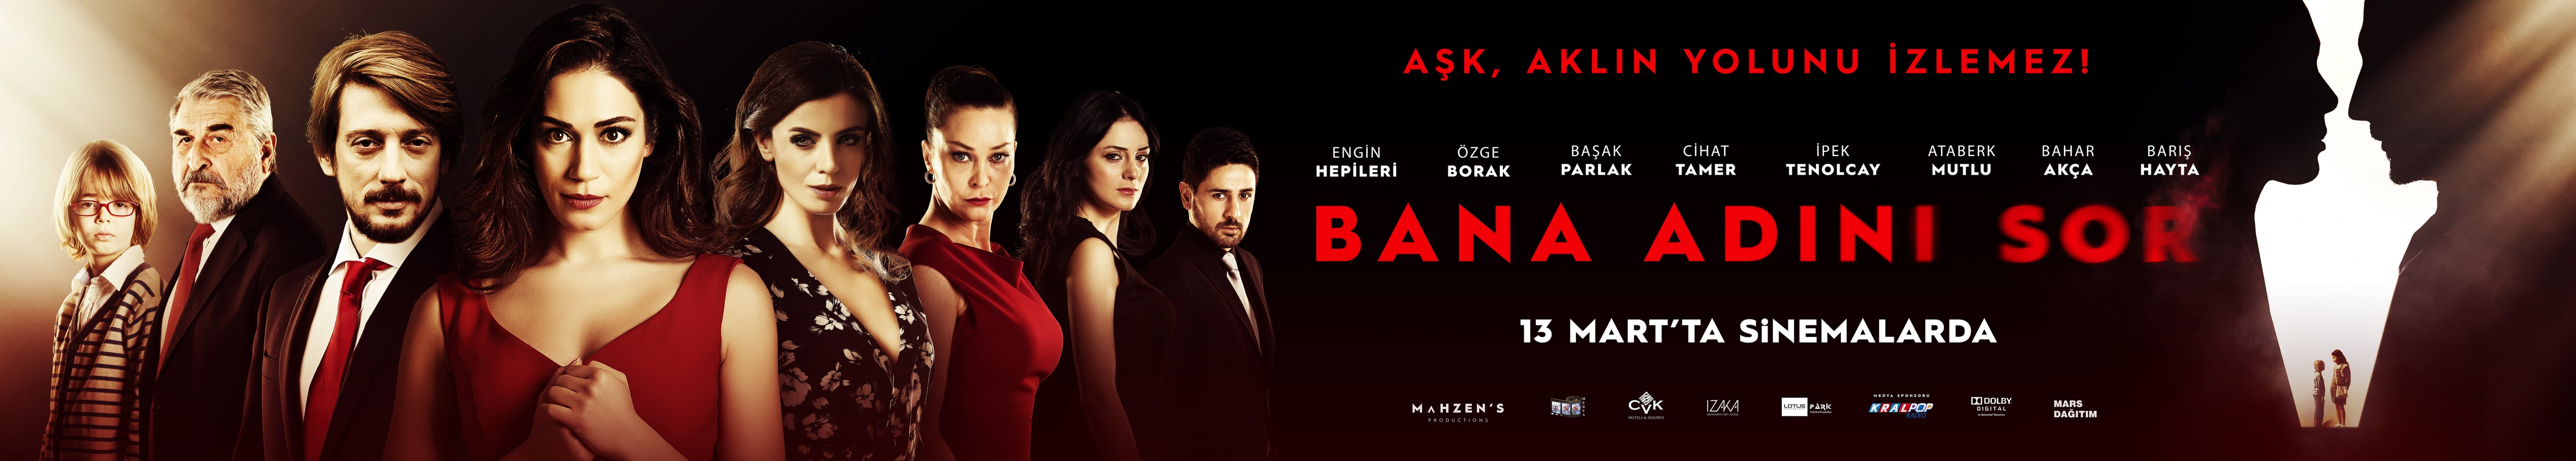 Mega Sized Movie Poster Image for Bana Adını Sor (#11 of 11)